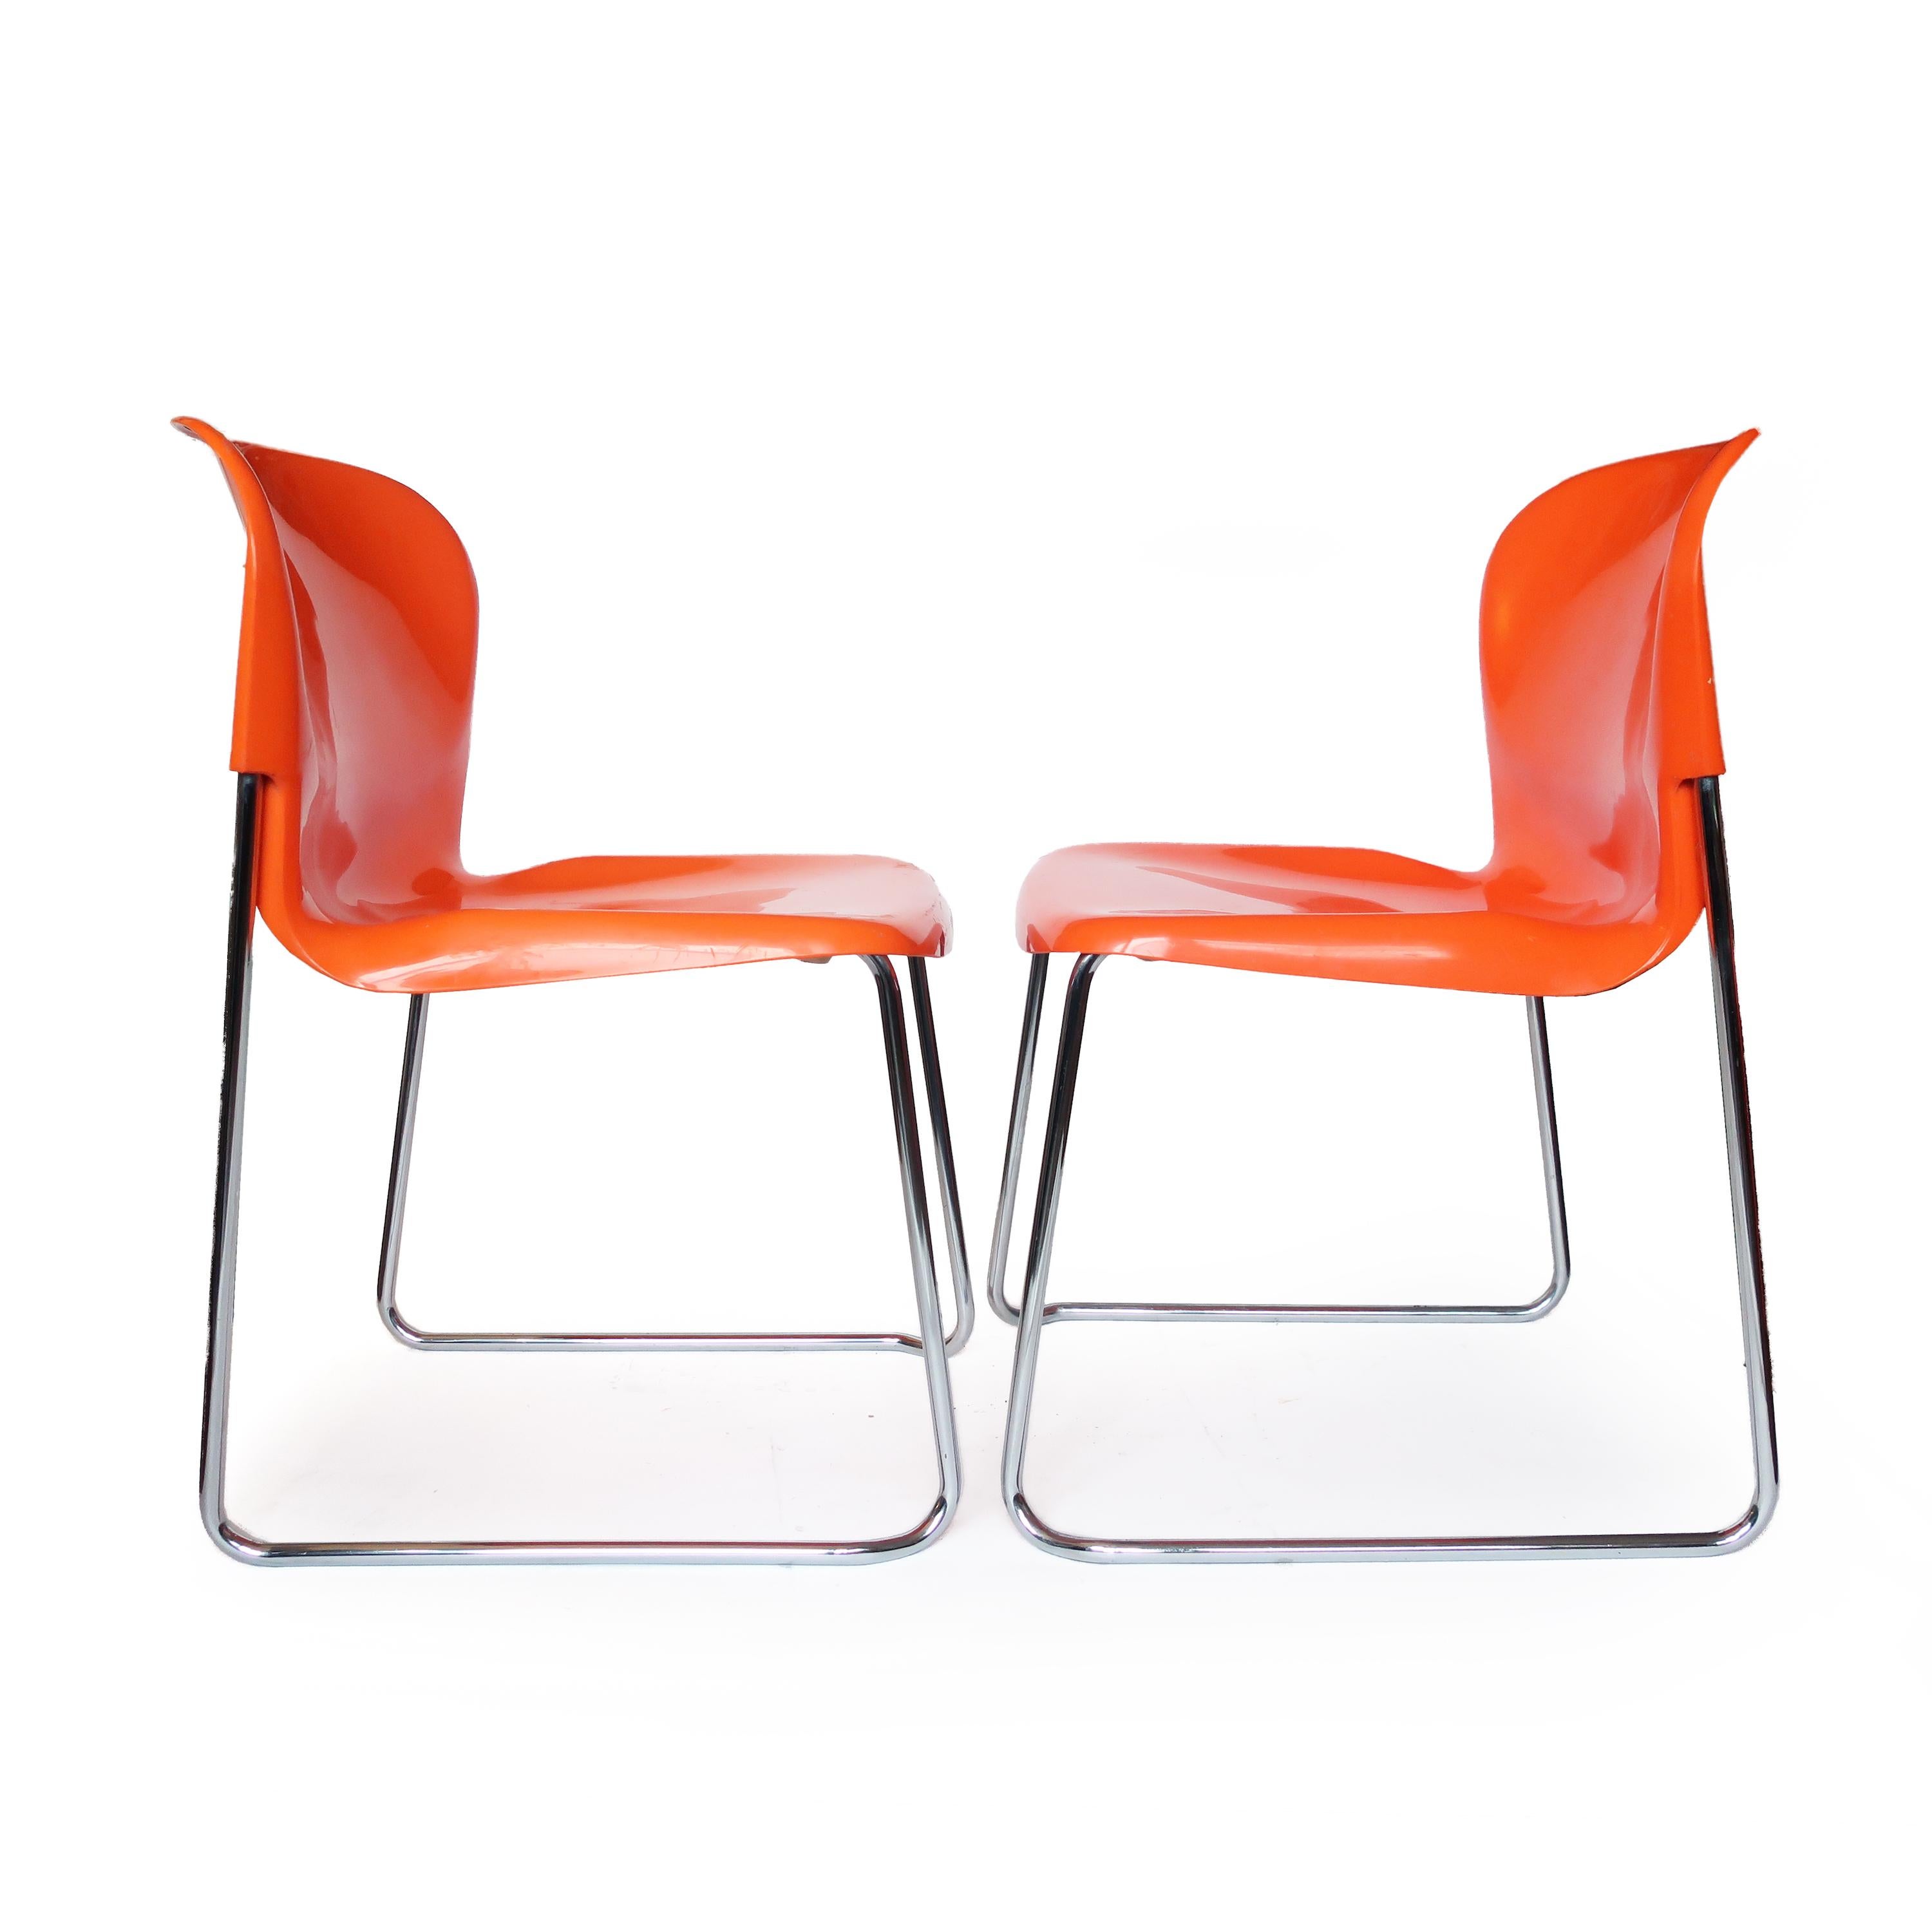 Un par de sillas SM 400 Swing de vivos colores, diseñadas en los años 70 por Gerd Lange para Drabert, un fabricante de muebles de Alemania Occidental. Los asientos de plástico moldeado naranja se asientan sobre un armazón cromado que permite